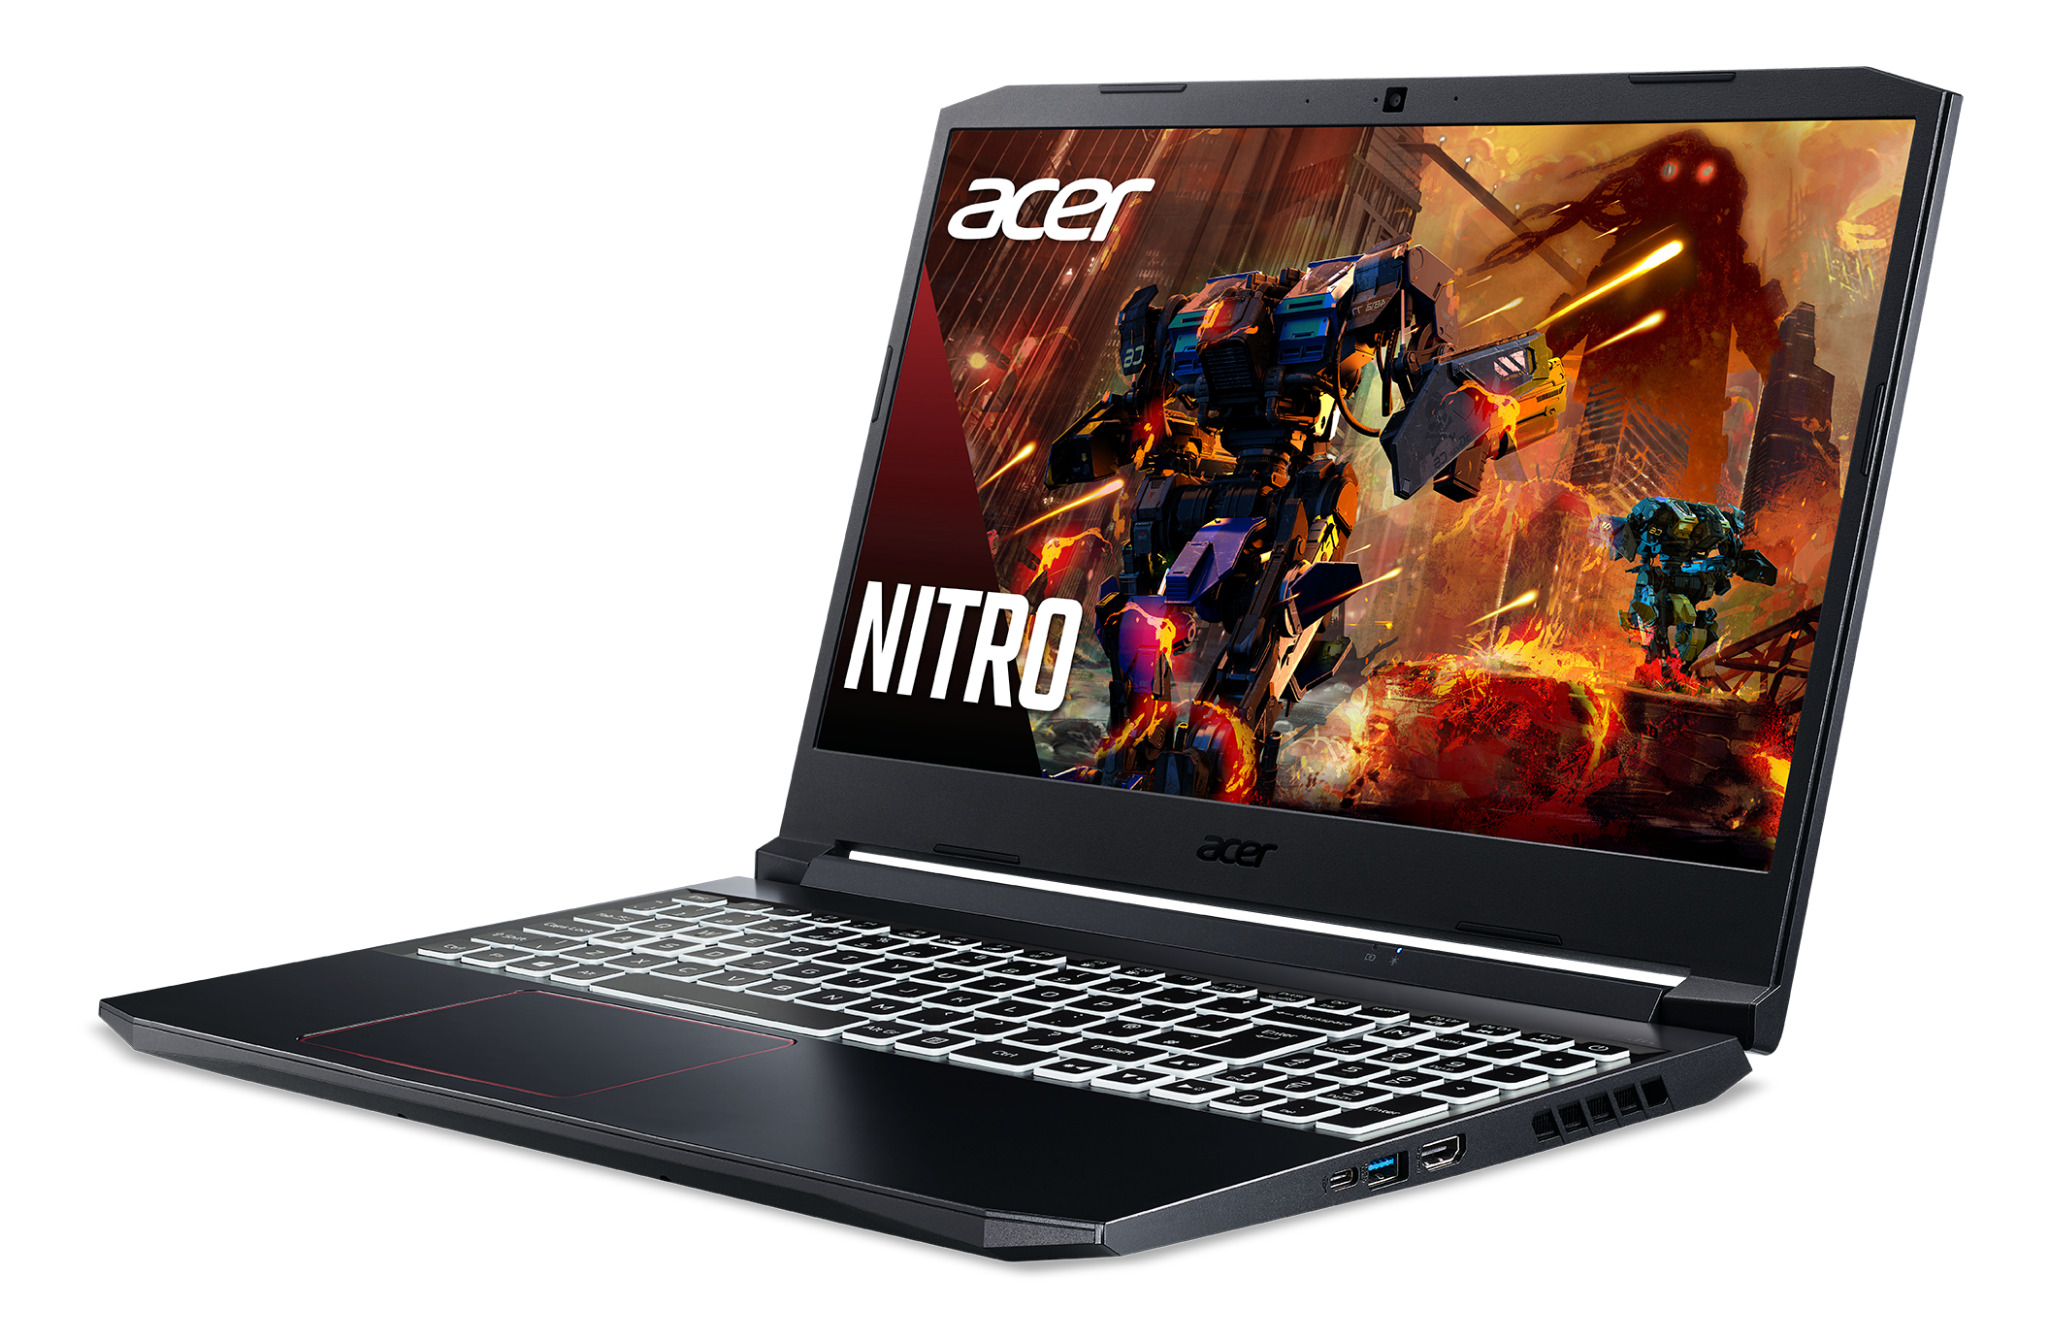 Laptop Acer Gaming Nitro 5 AN515-55-70AX NH.Q7NSV.001 - Intel Core i7-10750H, 8GB RAM, SSD 512GB, Nvidia GeForce GTX 1650Ti 4GB GDDR6, 15.6 inch